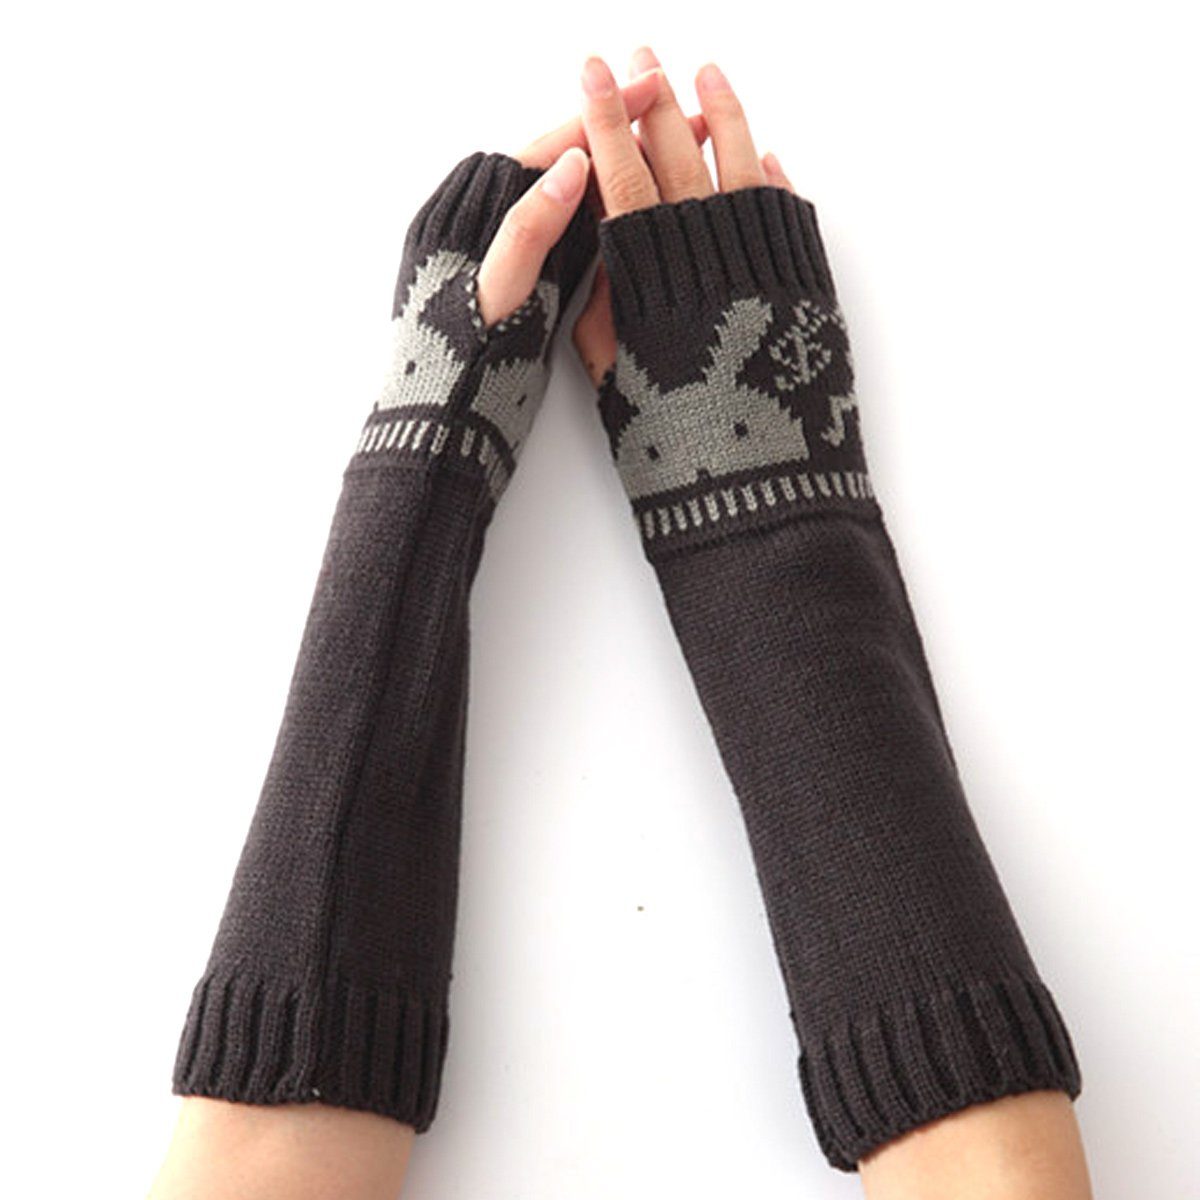 Jormftte Strickhandschuhe Gestrickte Armstulpen Handschuhe Winter Lange für Damen und Herren Dunkelgrau